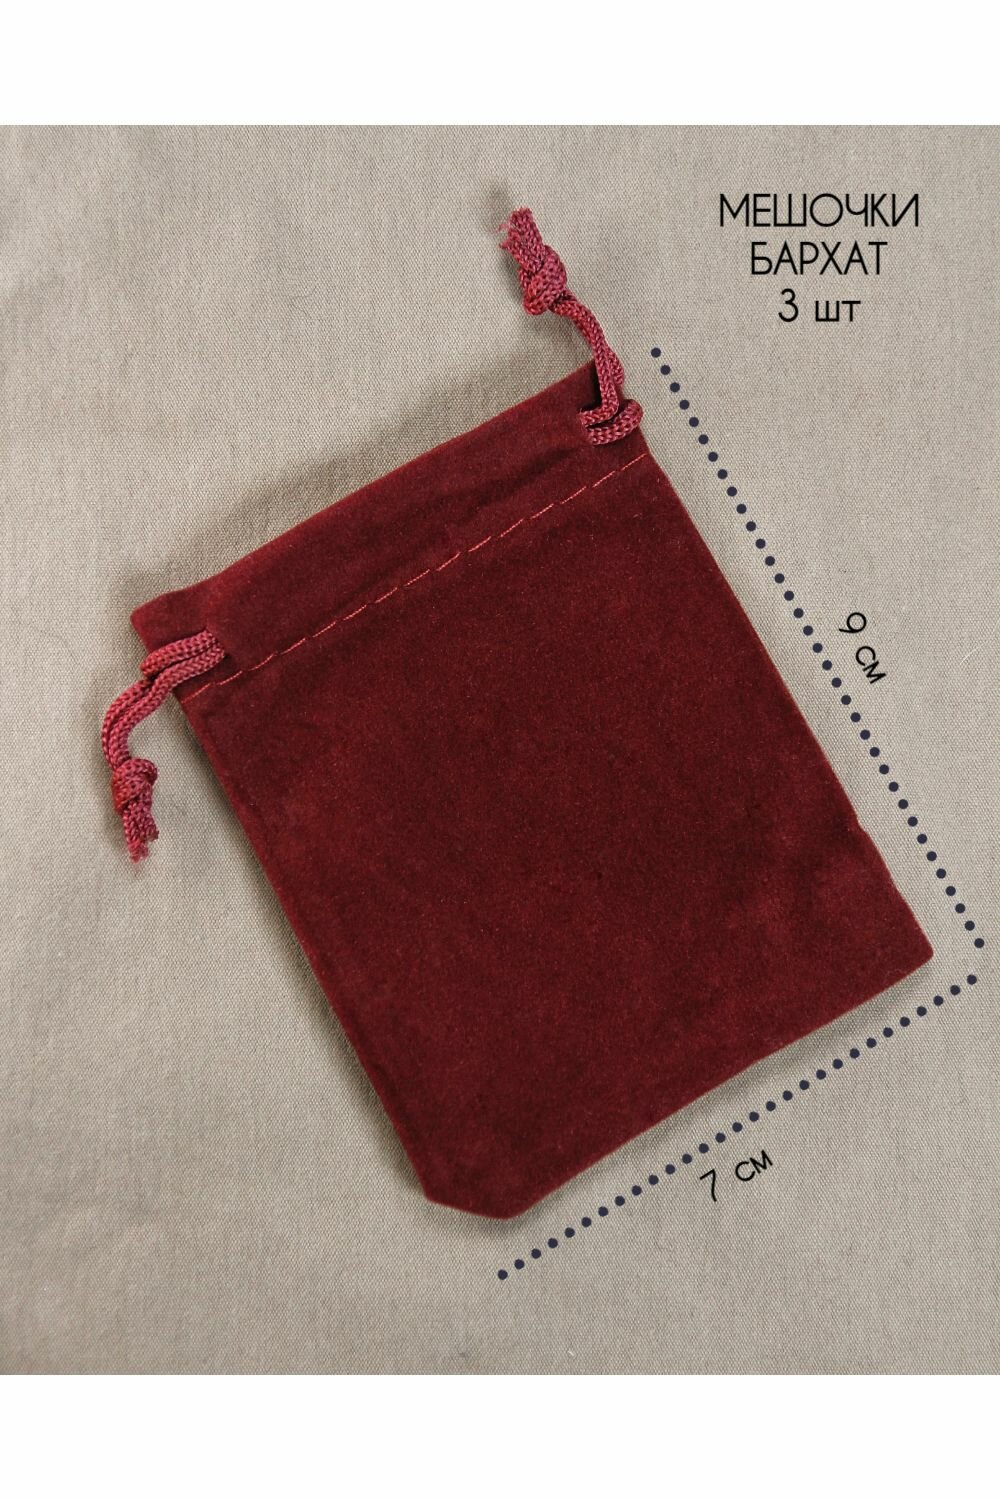 Подарочный мешочек - 3 шт бархатный бордовый 7х9 см - для украшений бижутерии подарка хранения карт рун